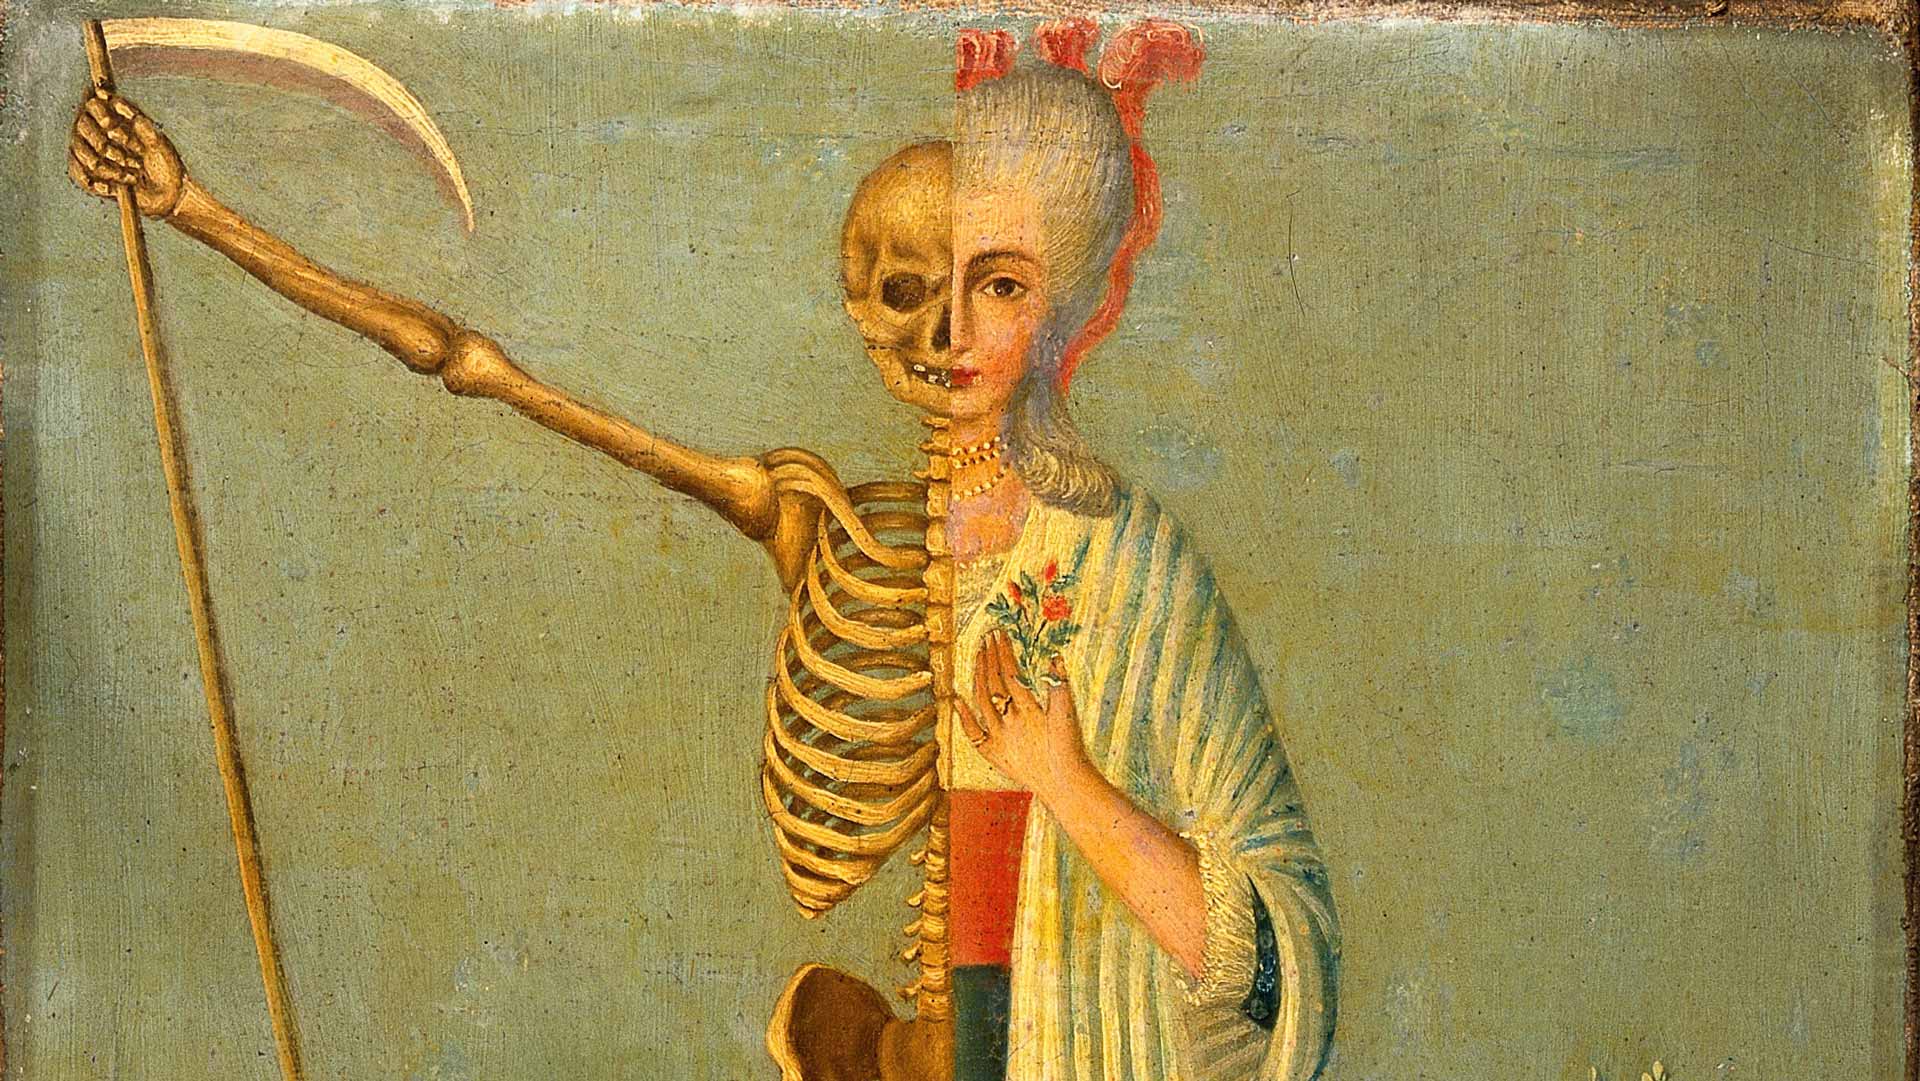 Oficios de la muerte: “Siempre hemos vivido en conexión con los muertos"